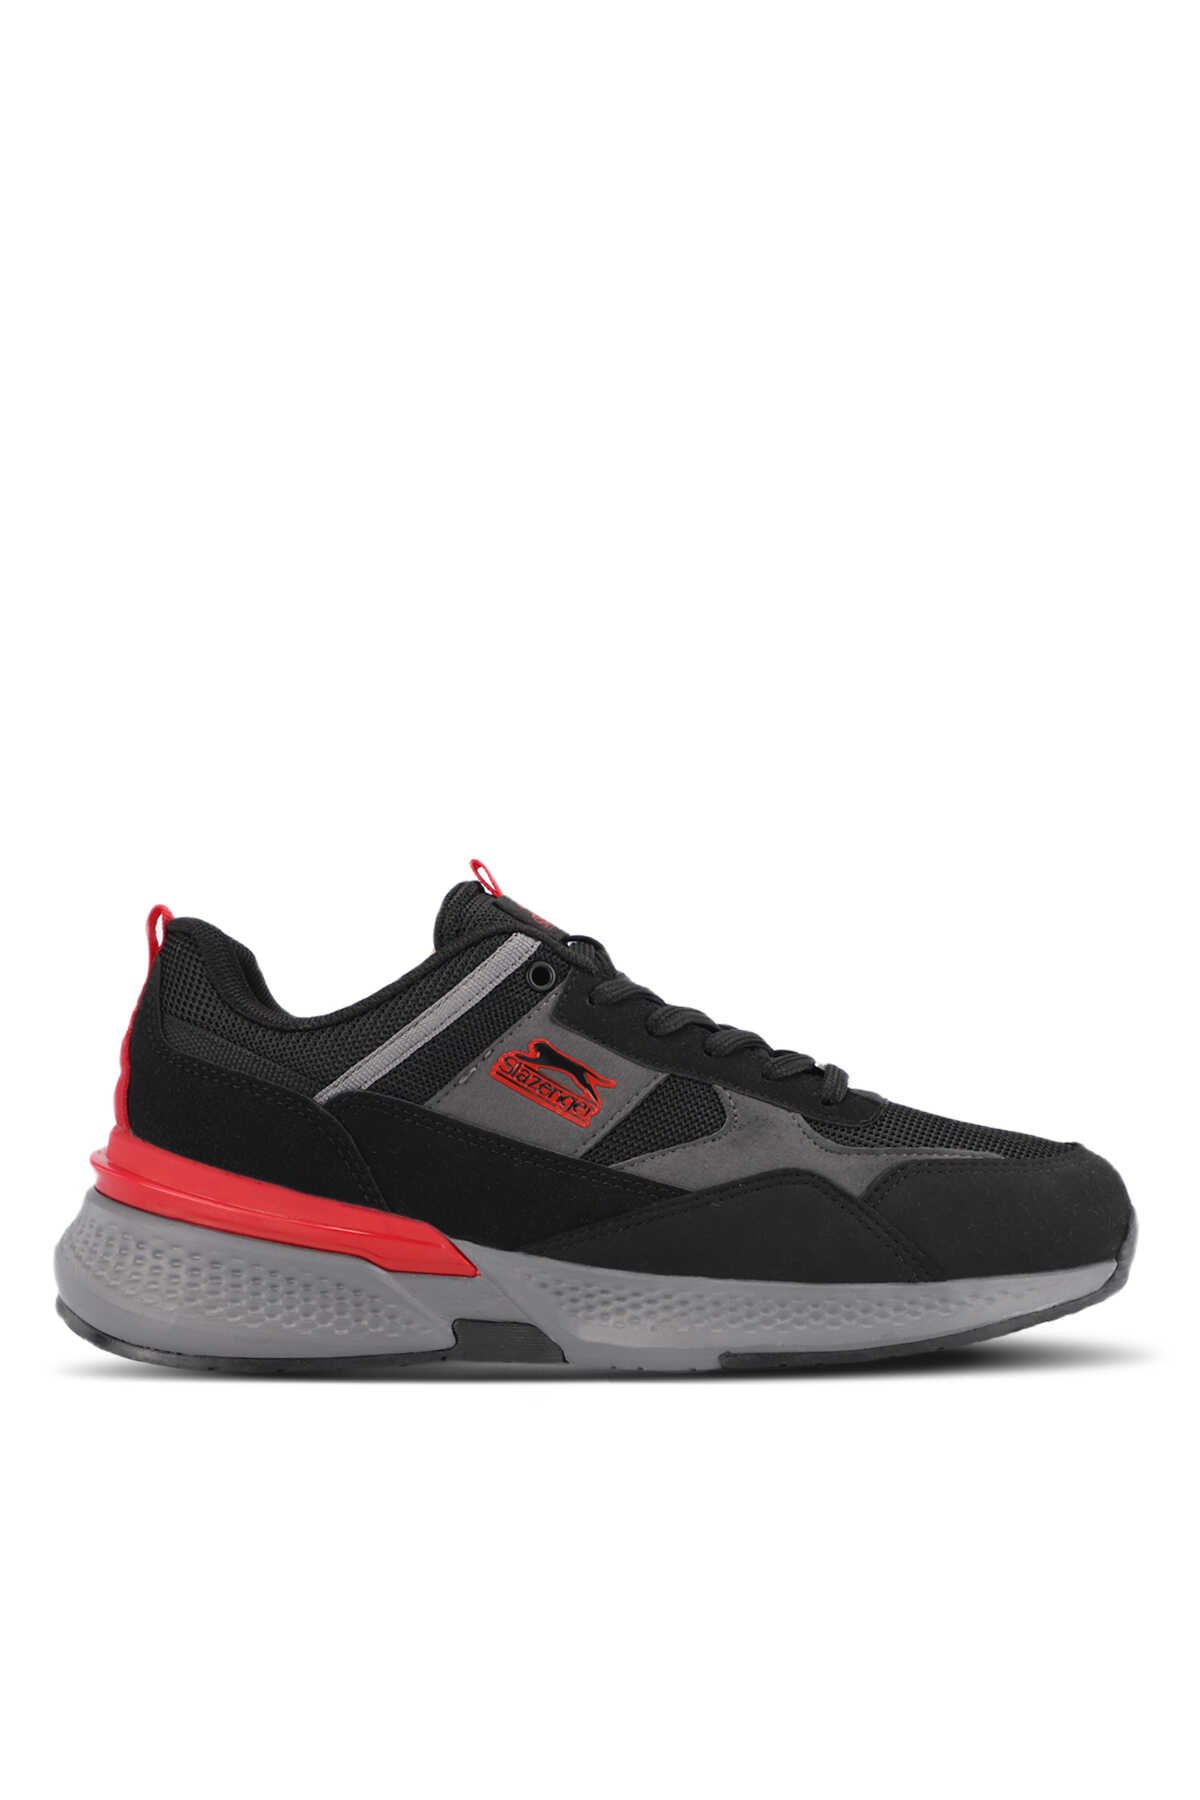 Slazenger - POSTMAN I Sneaker Erkek Ayakkabı Siyah / Kırmızı